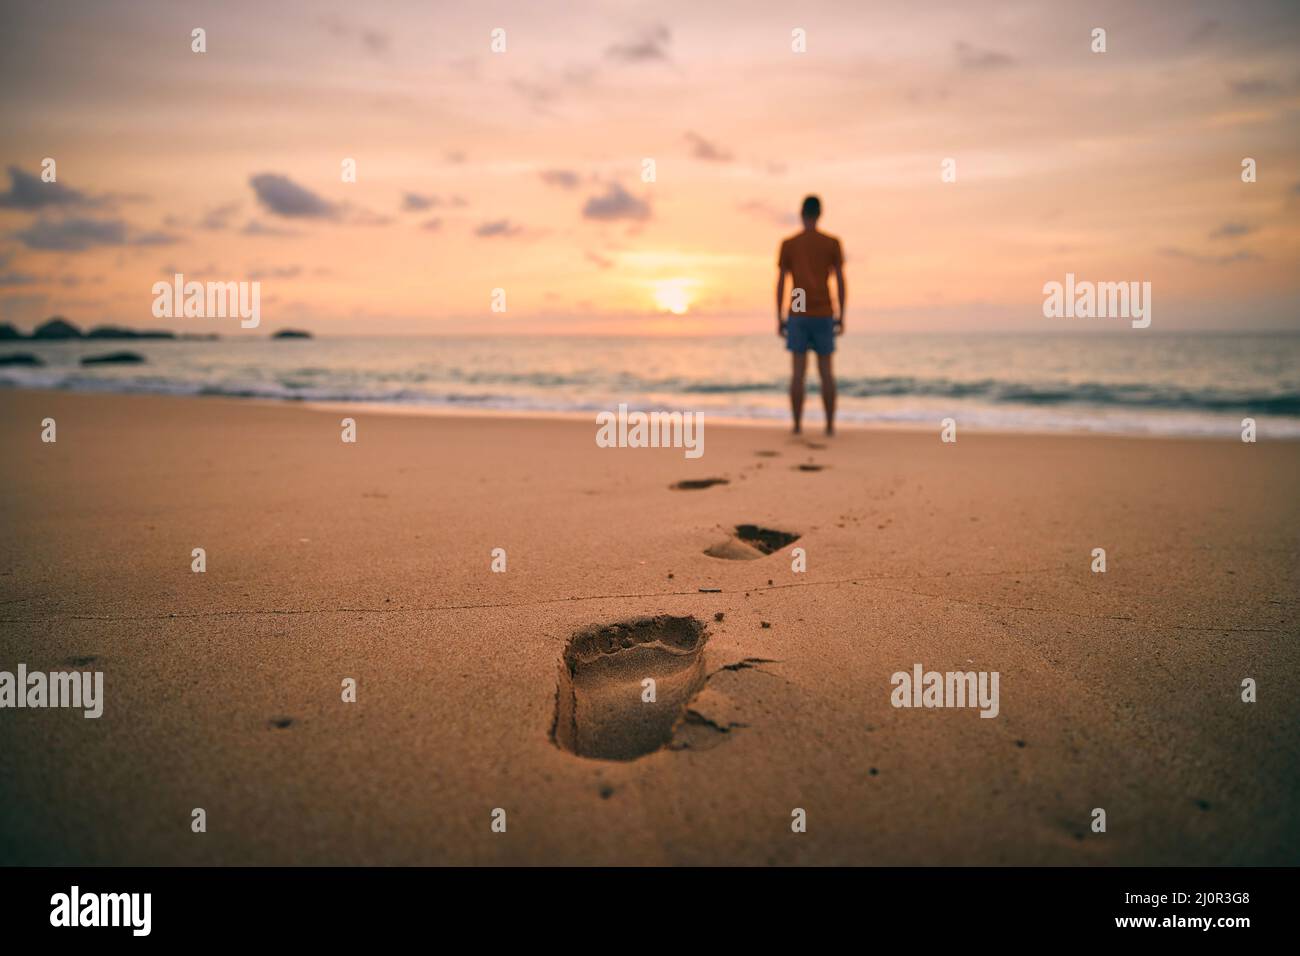 Fußabdrücke im Sand gegen die Silhouette der Person. Einsamer Mann, der bei goldenem Sonnenuntergang am Strand entlang zum Meer geht. Stockfoto